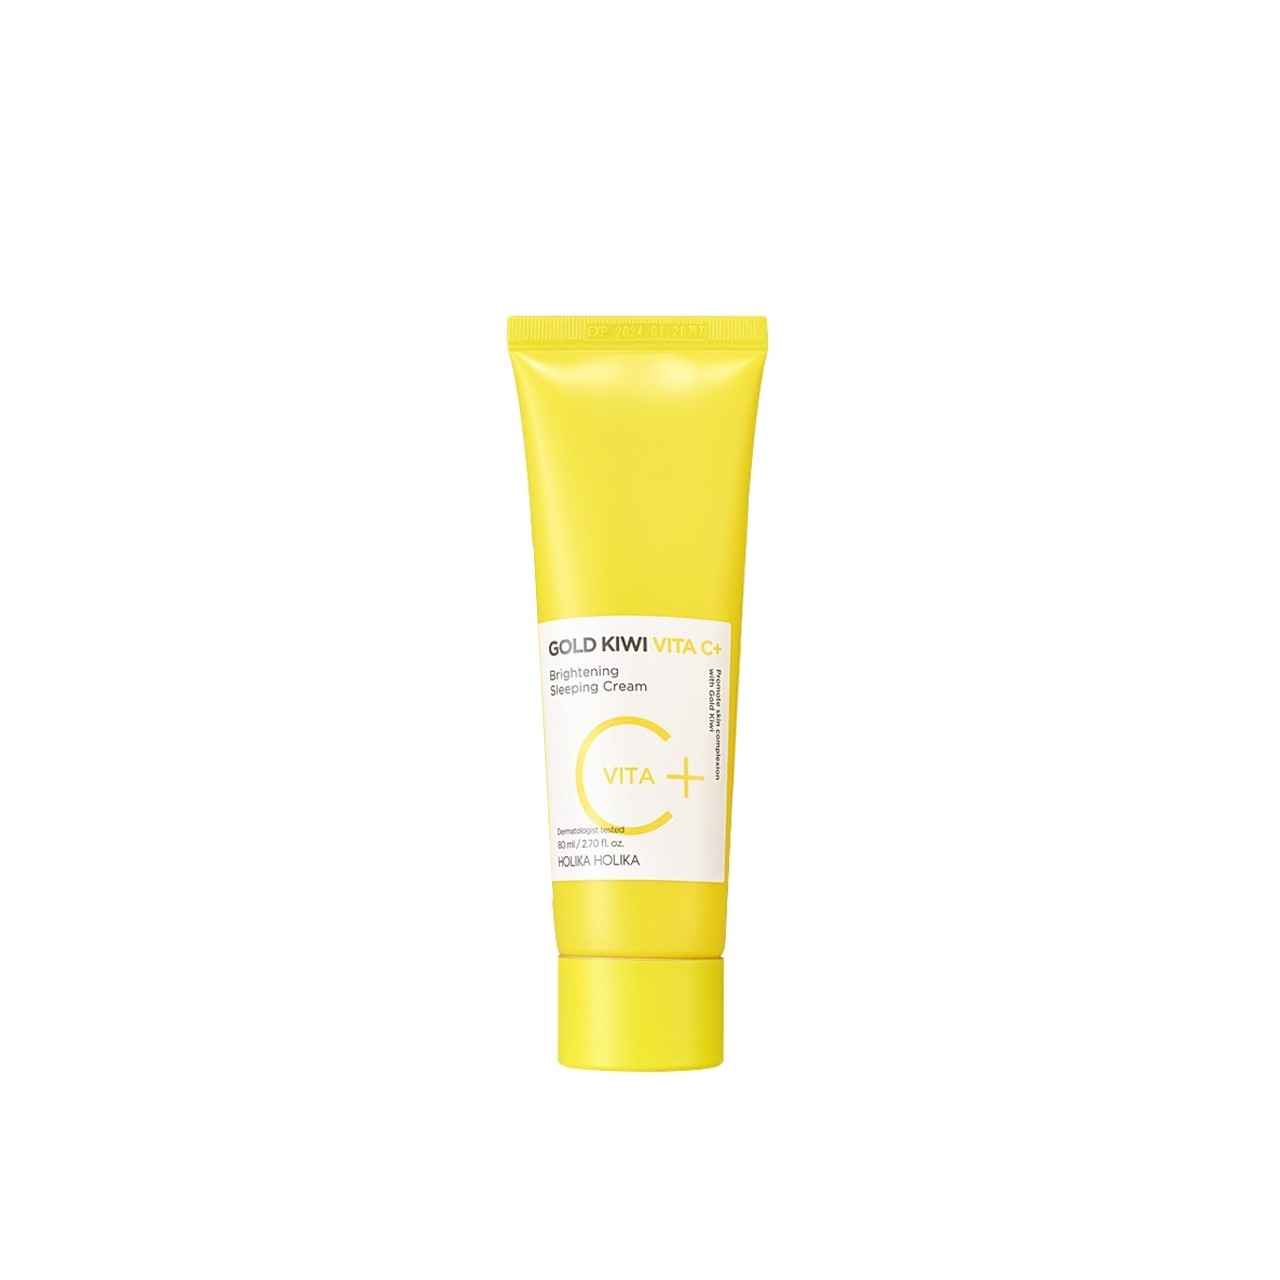 Holika Holika Gold Kiwi Vita C+ Brightening Sleeping Cream 80ml (2.71fl oz)